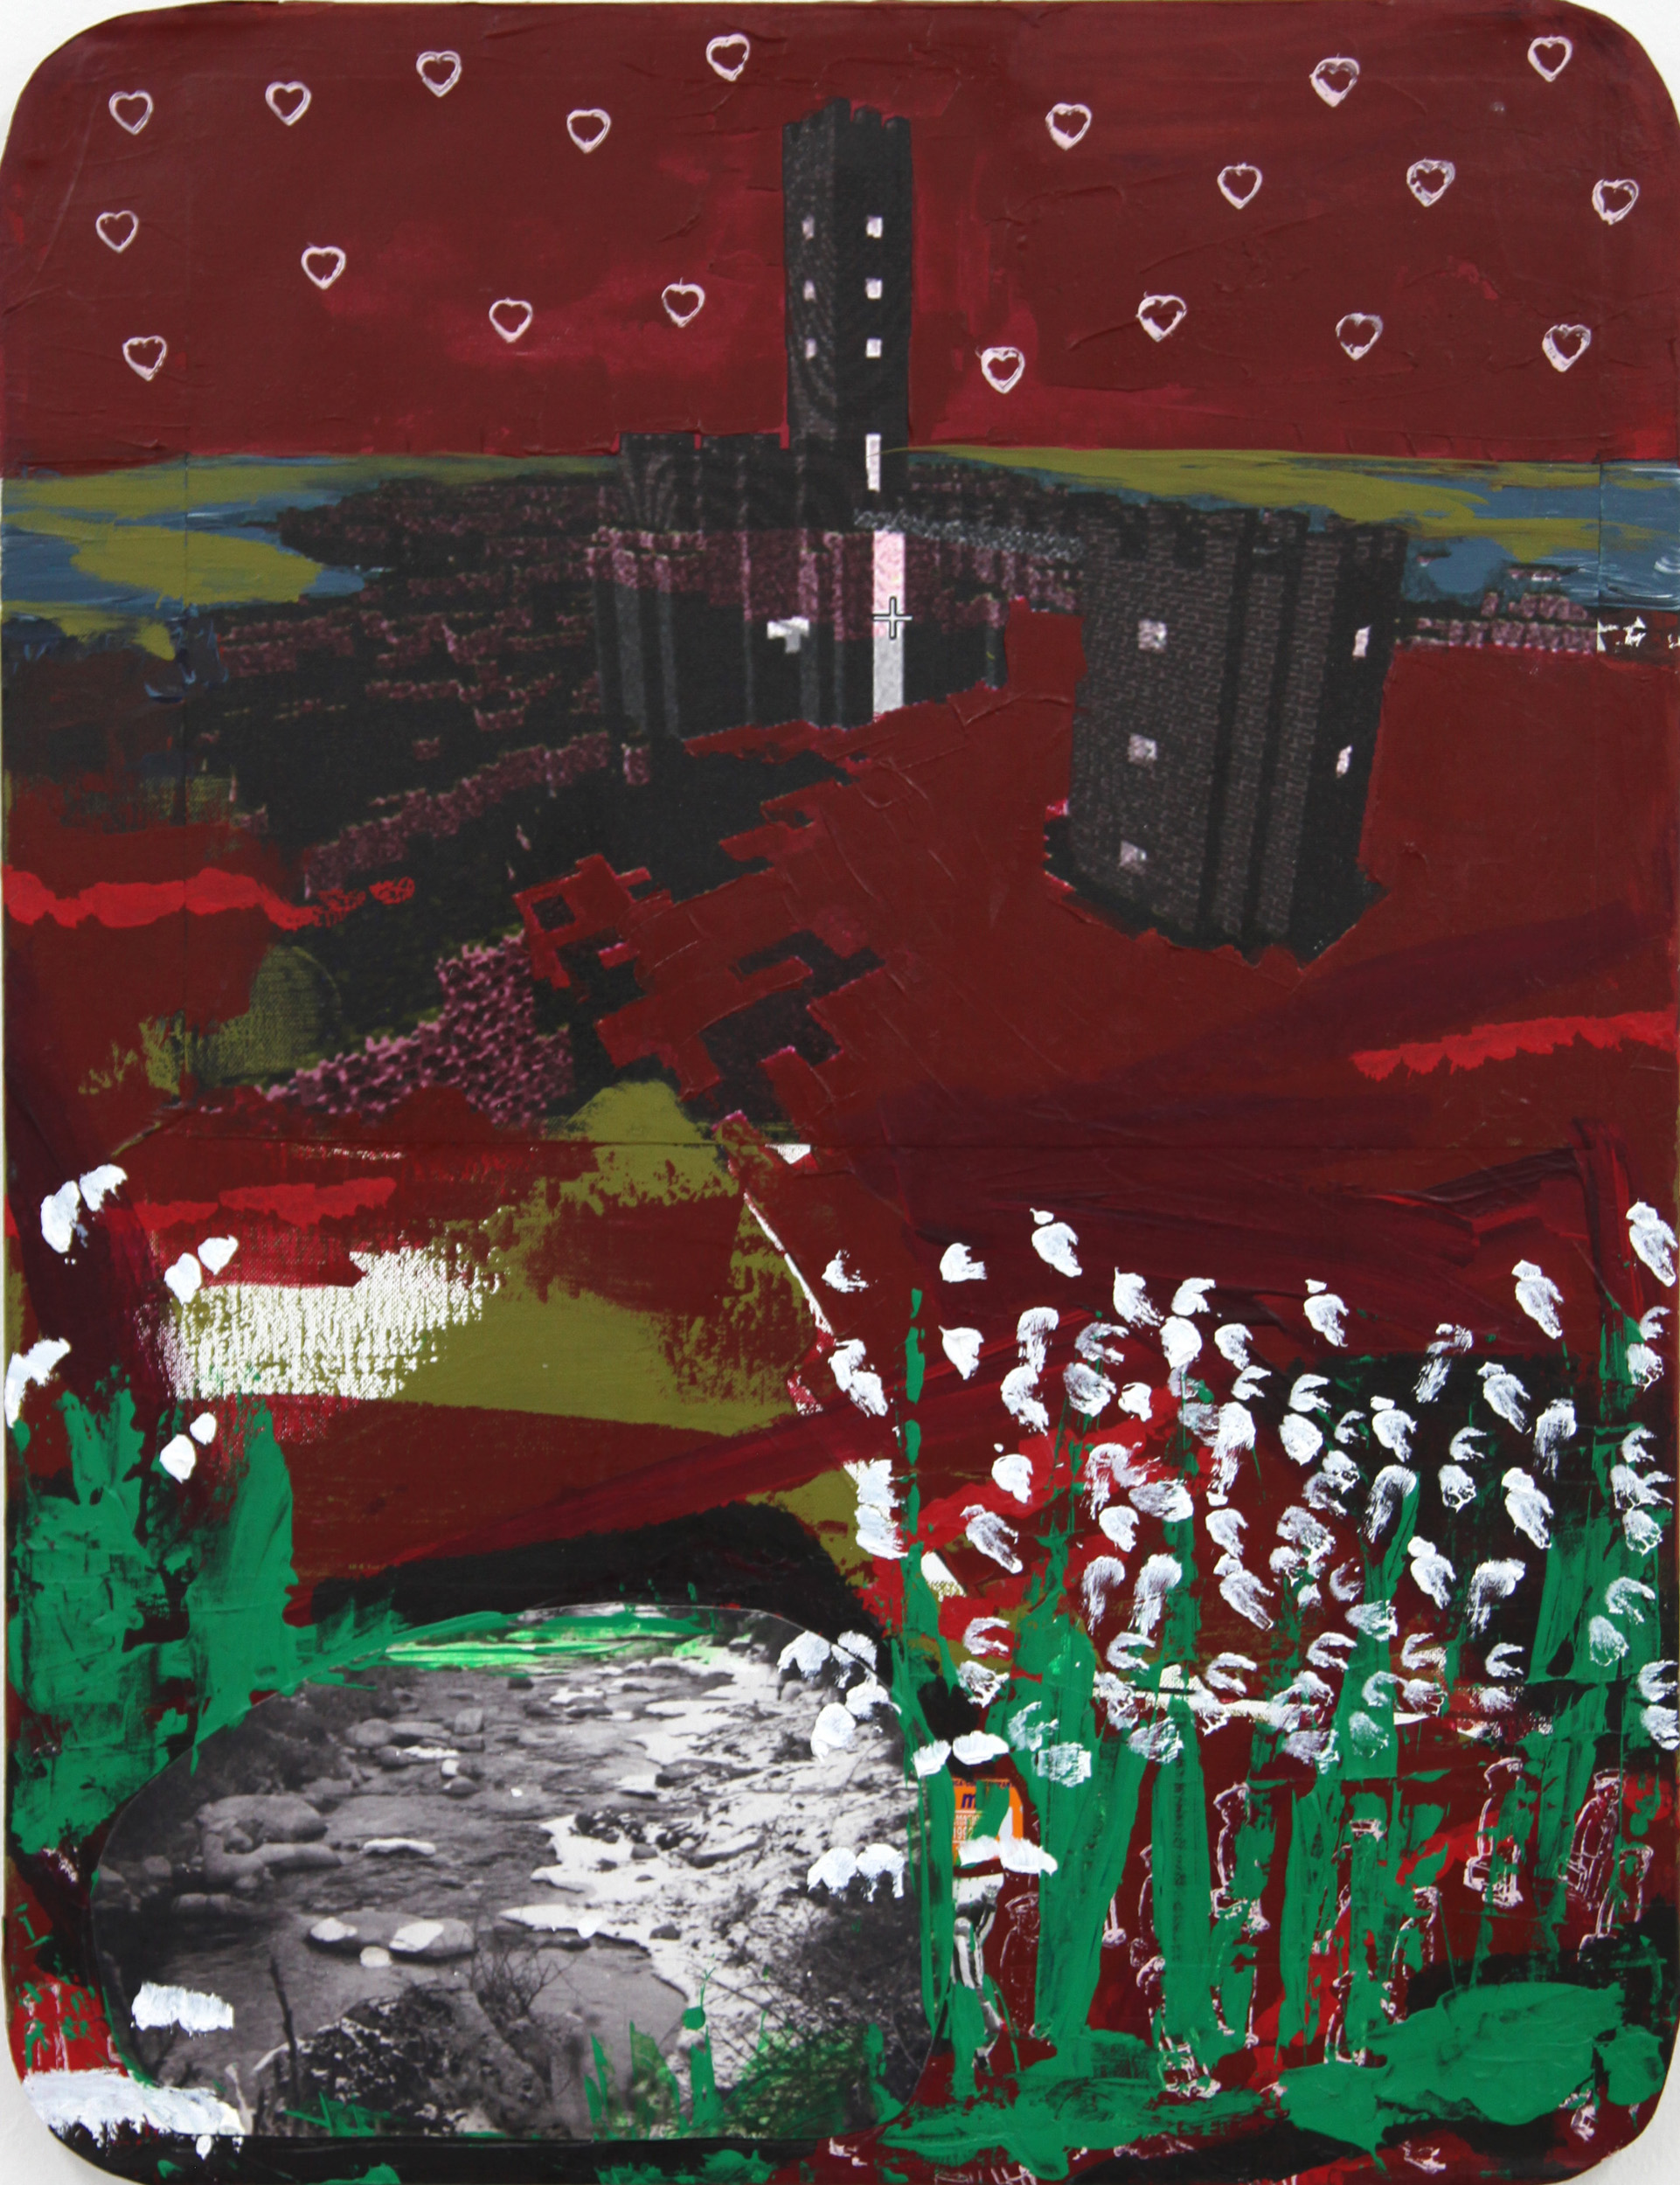 Paisaje rojo, 2012, mixed media on canvas, 65 x 50 cm.